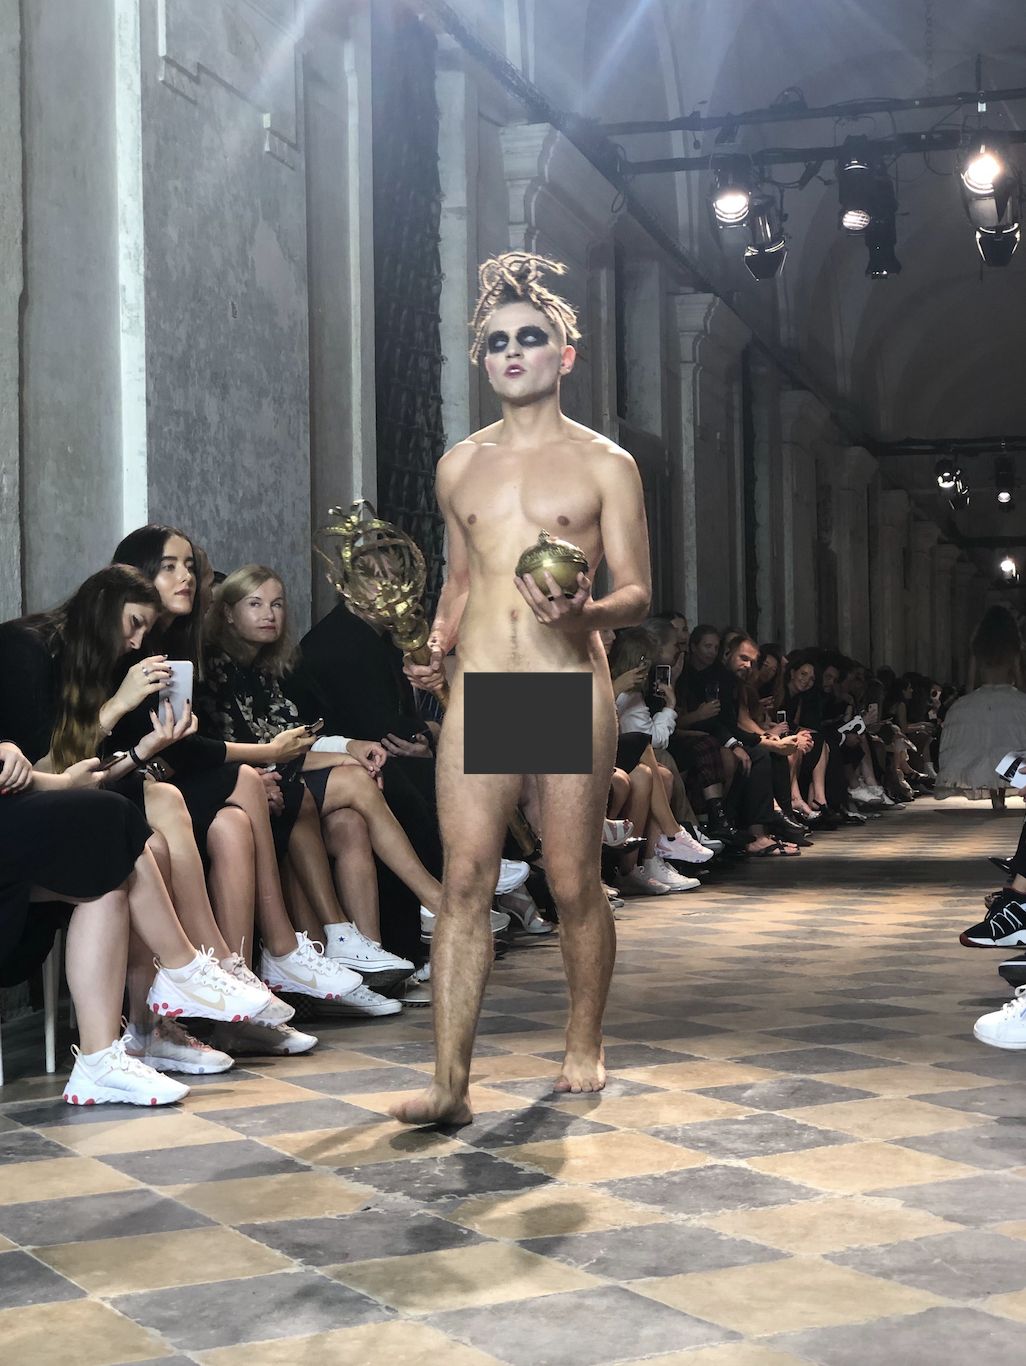 Po móle pražského Fashion Weeku sa prechádzali nahí ľudia. Česká dizajnérka tvrdí, že na planéte je už šatstva dosť